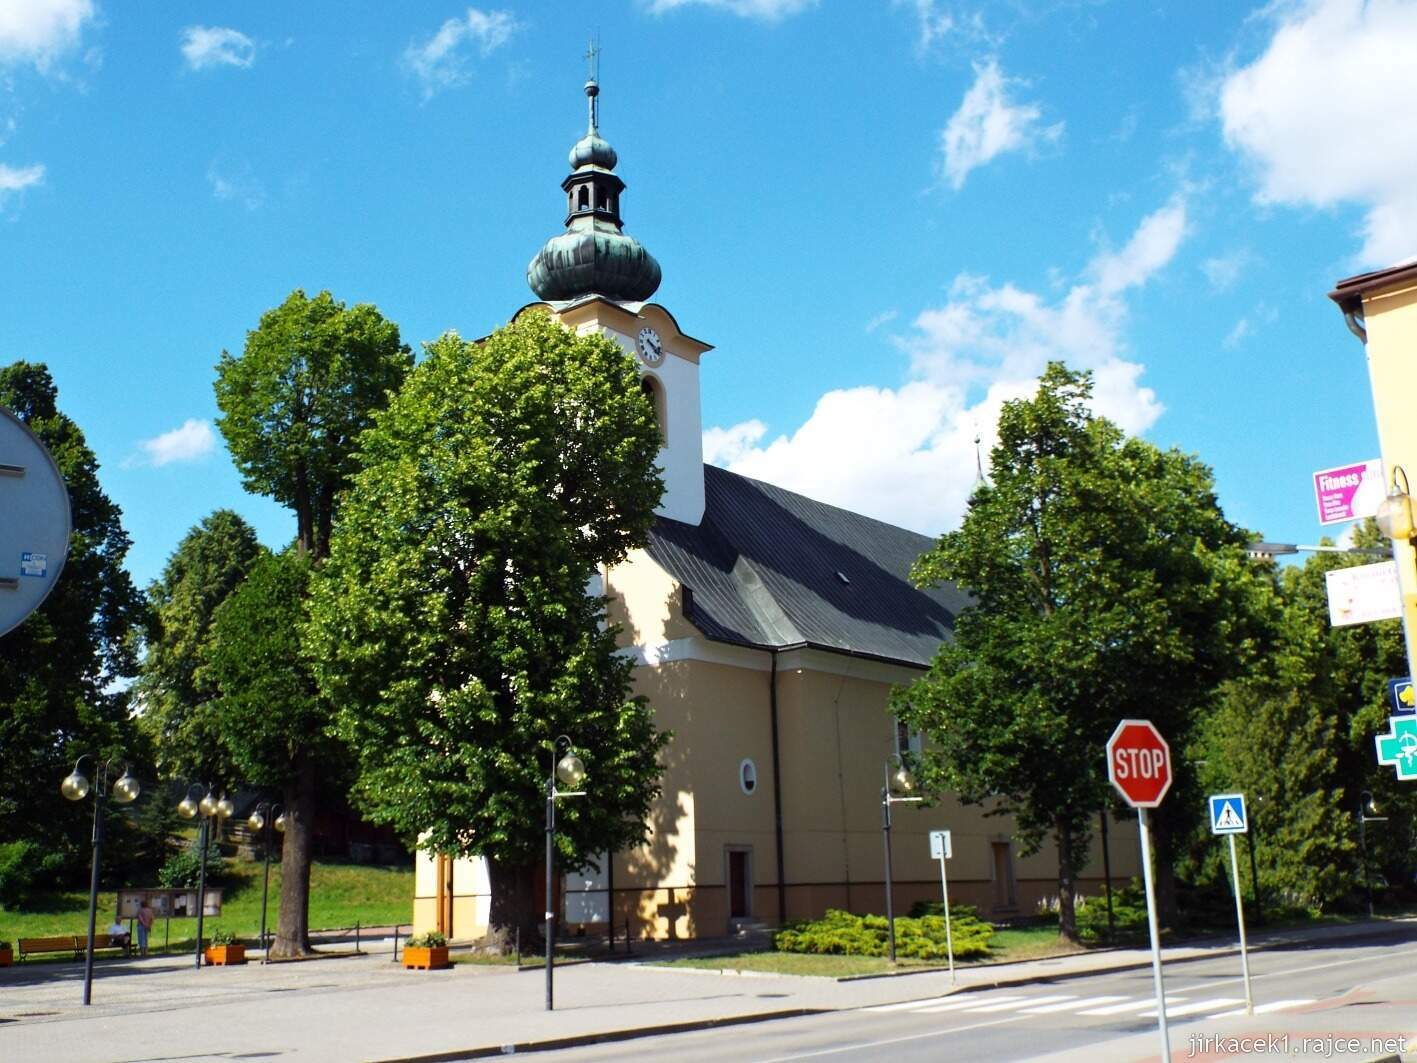 017 - Nový Hrozenkov - kostel sv. Jana Křtitele 02 - celkový pohled